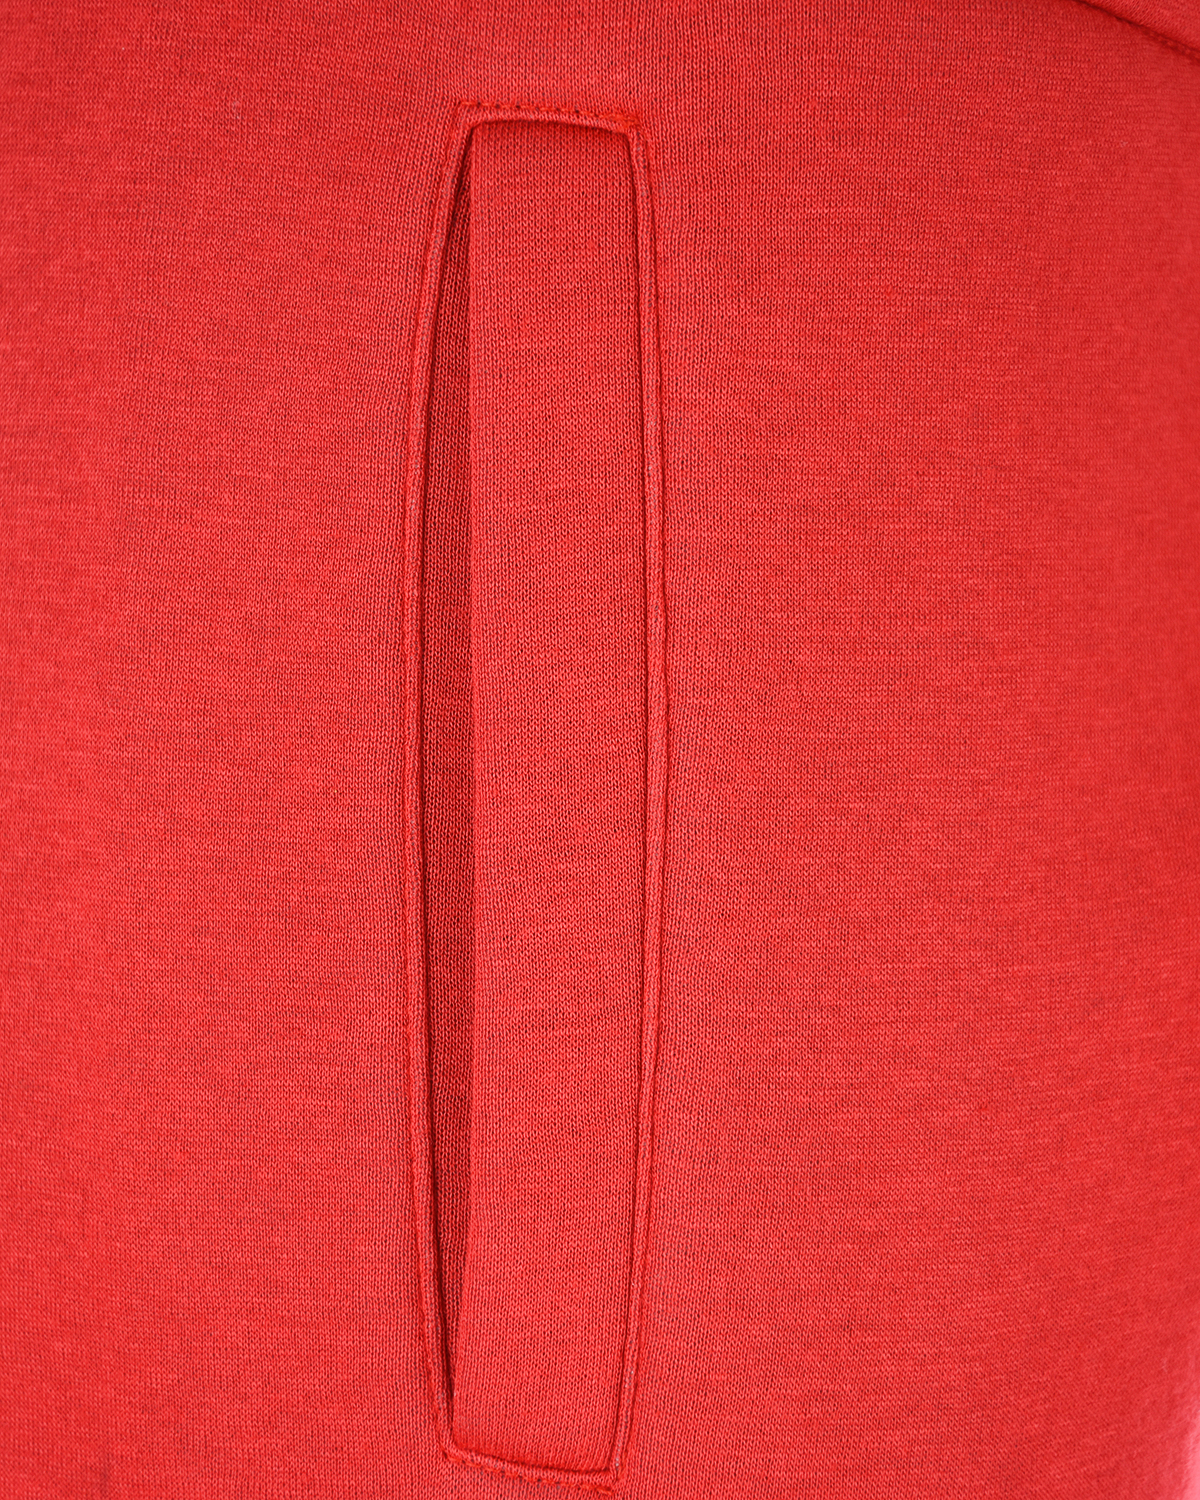 Красные джоггеры с лампасами Scrambled Ego, размер 40, цвет красный - фото 5